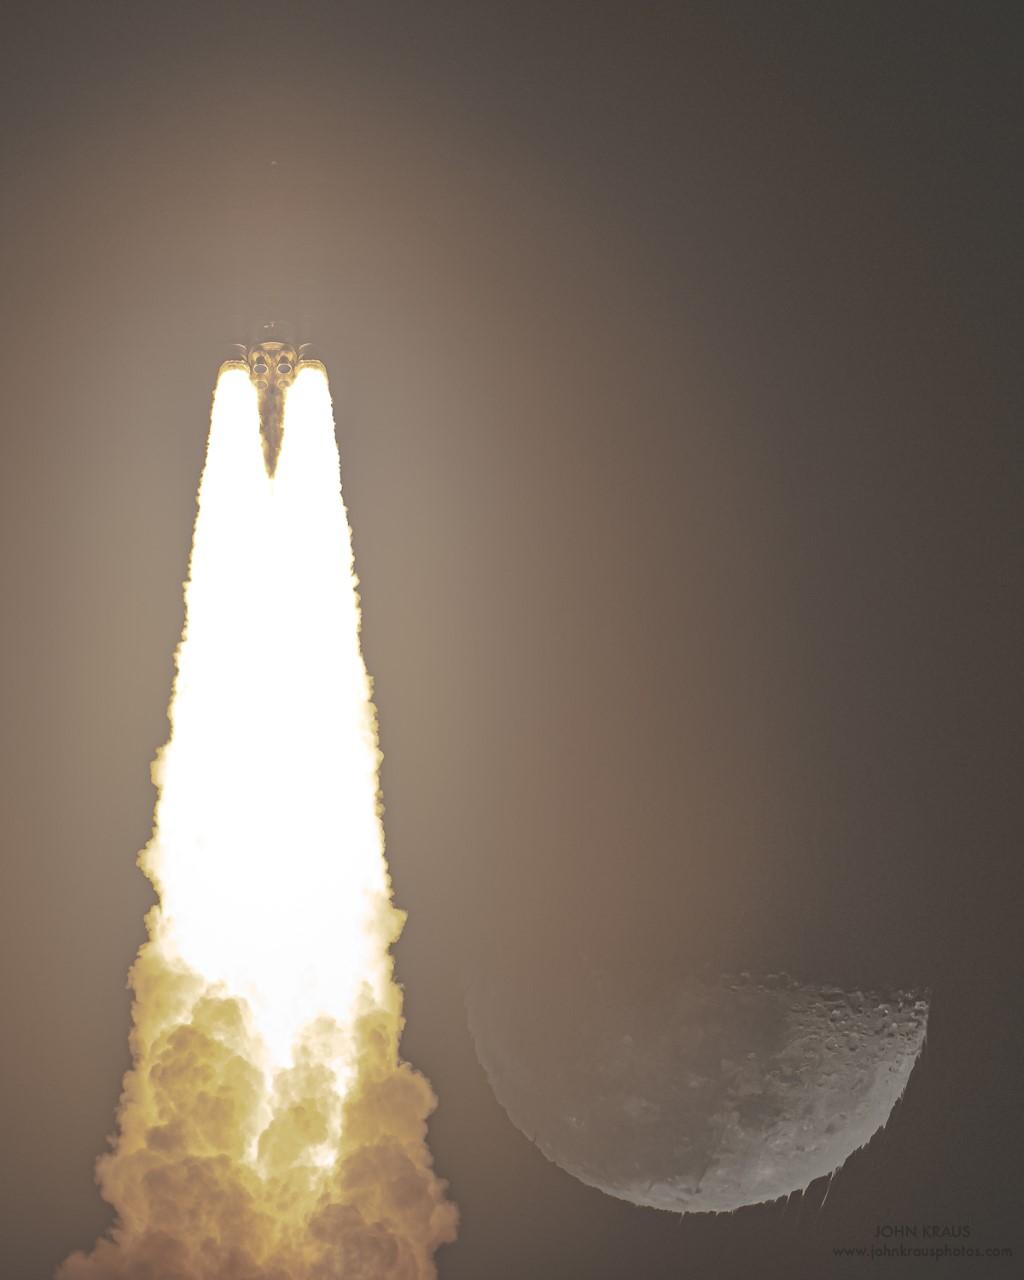 اندفاعات ملتهبة من فوّهات صاروخ مع أدخنة وبجانبها القمر الذي تبدو أطرافه كأنها شمع يذوب